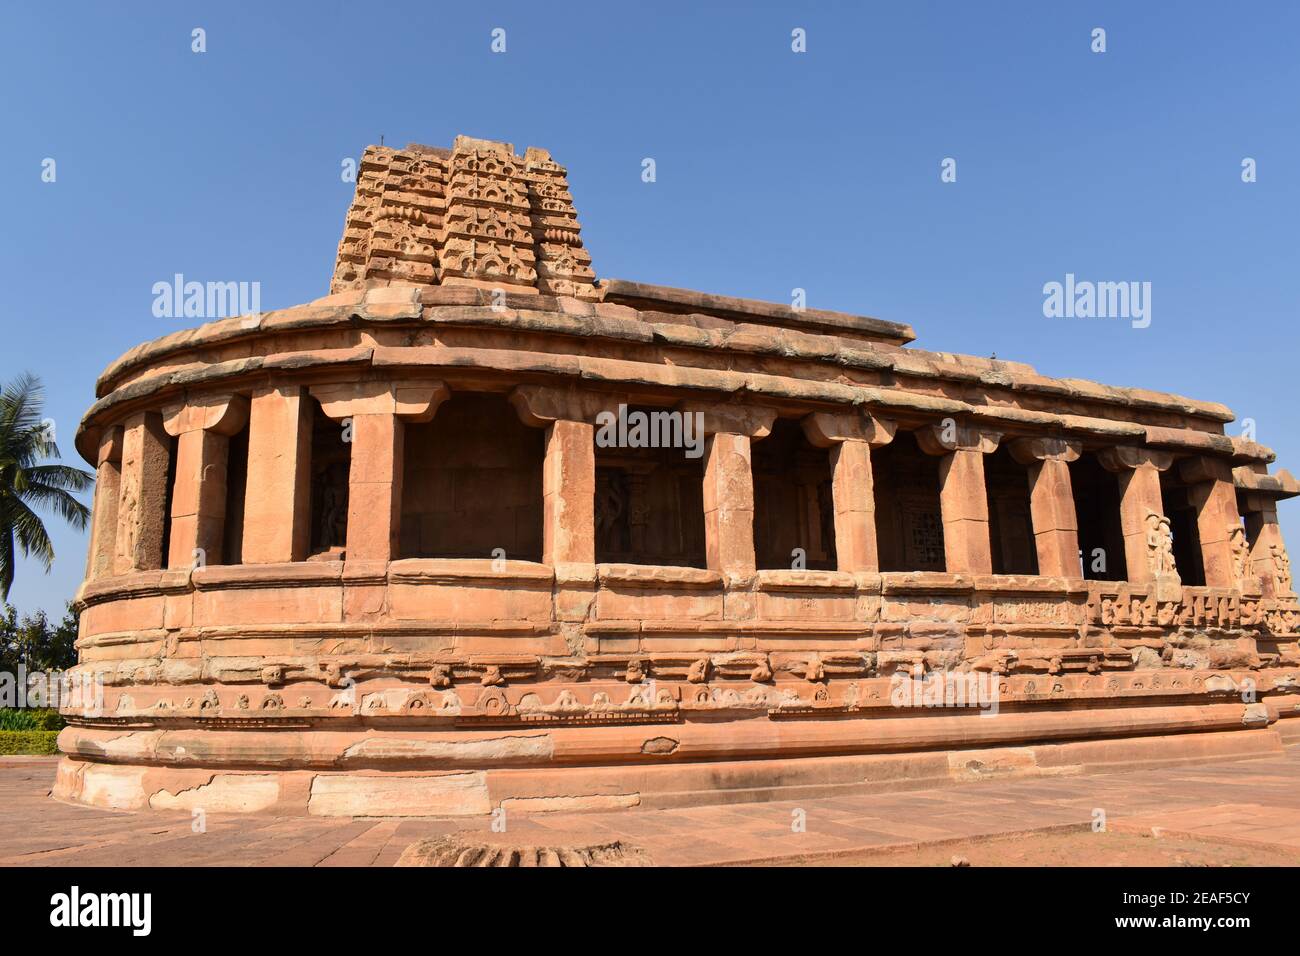 Aihole, Karnataka - 2 de diciembre de 2020 : Templo de Durga en Aihole. Uno de los destinos turísticos más famosos de karnataka, India. Foto de stock